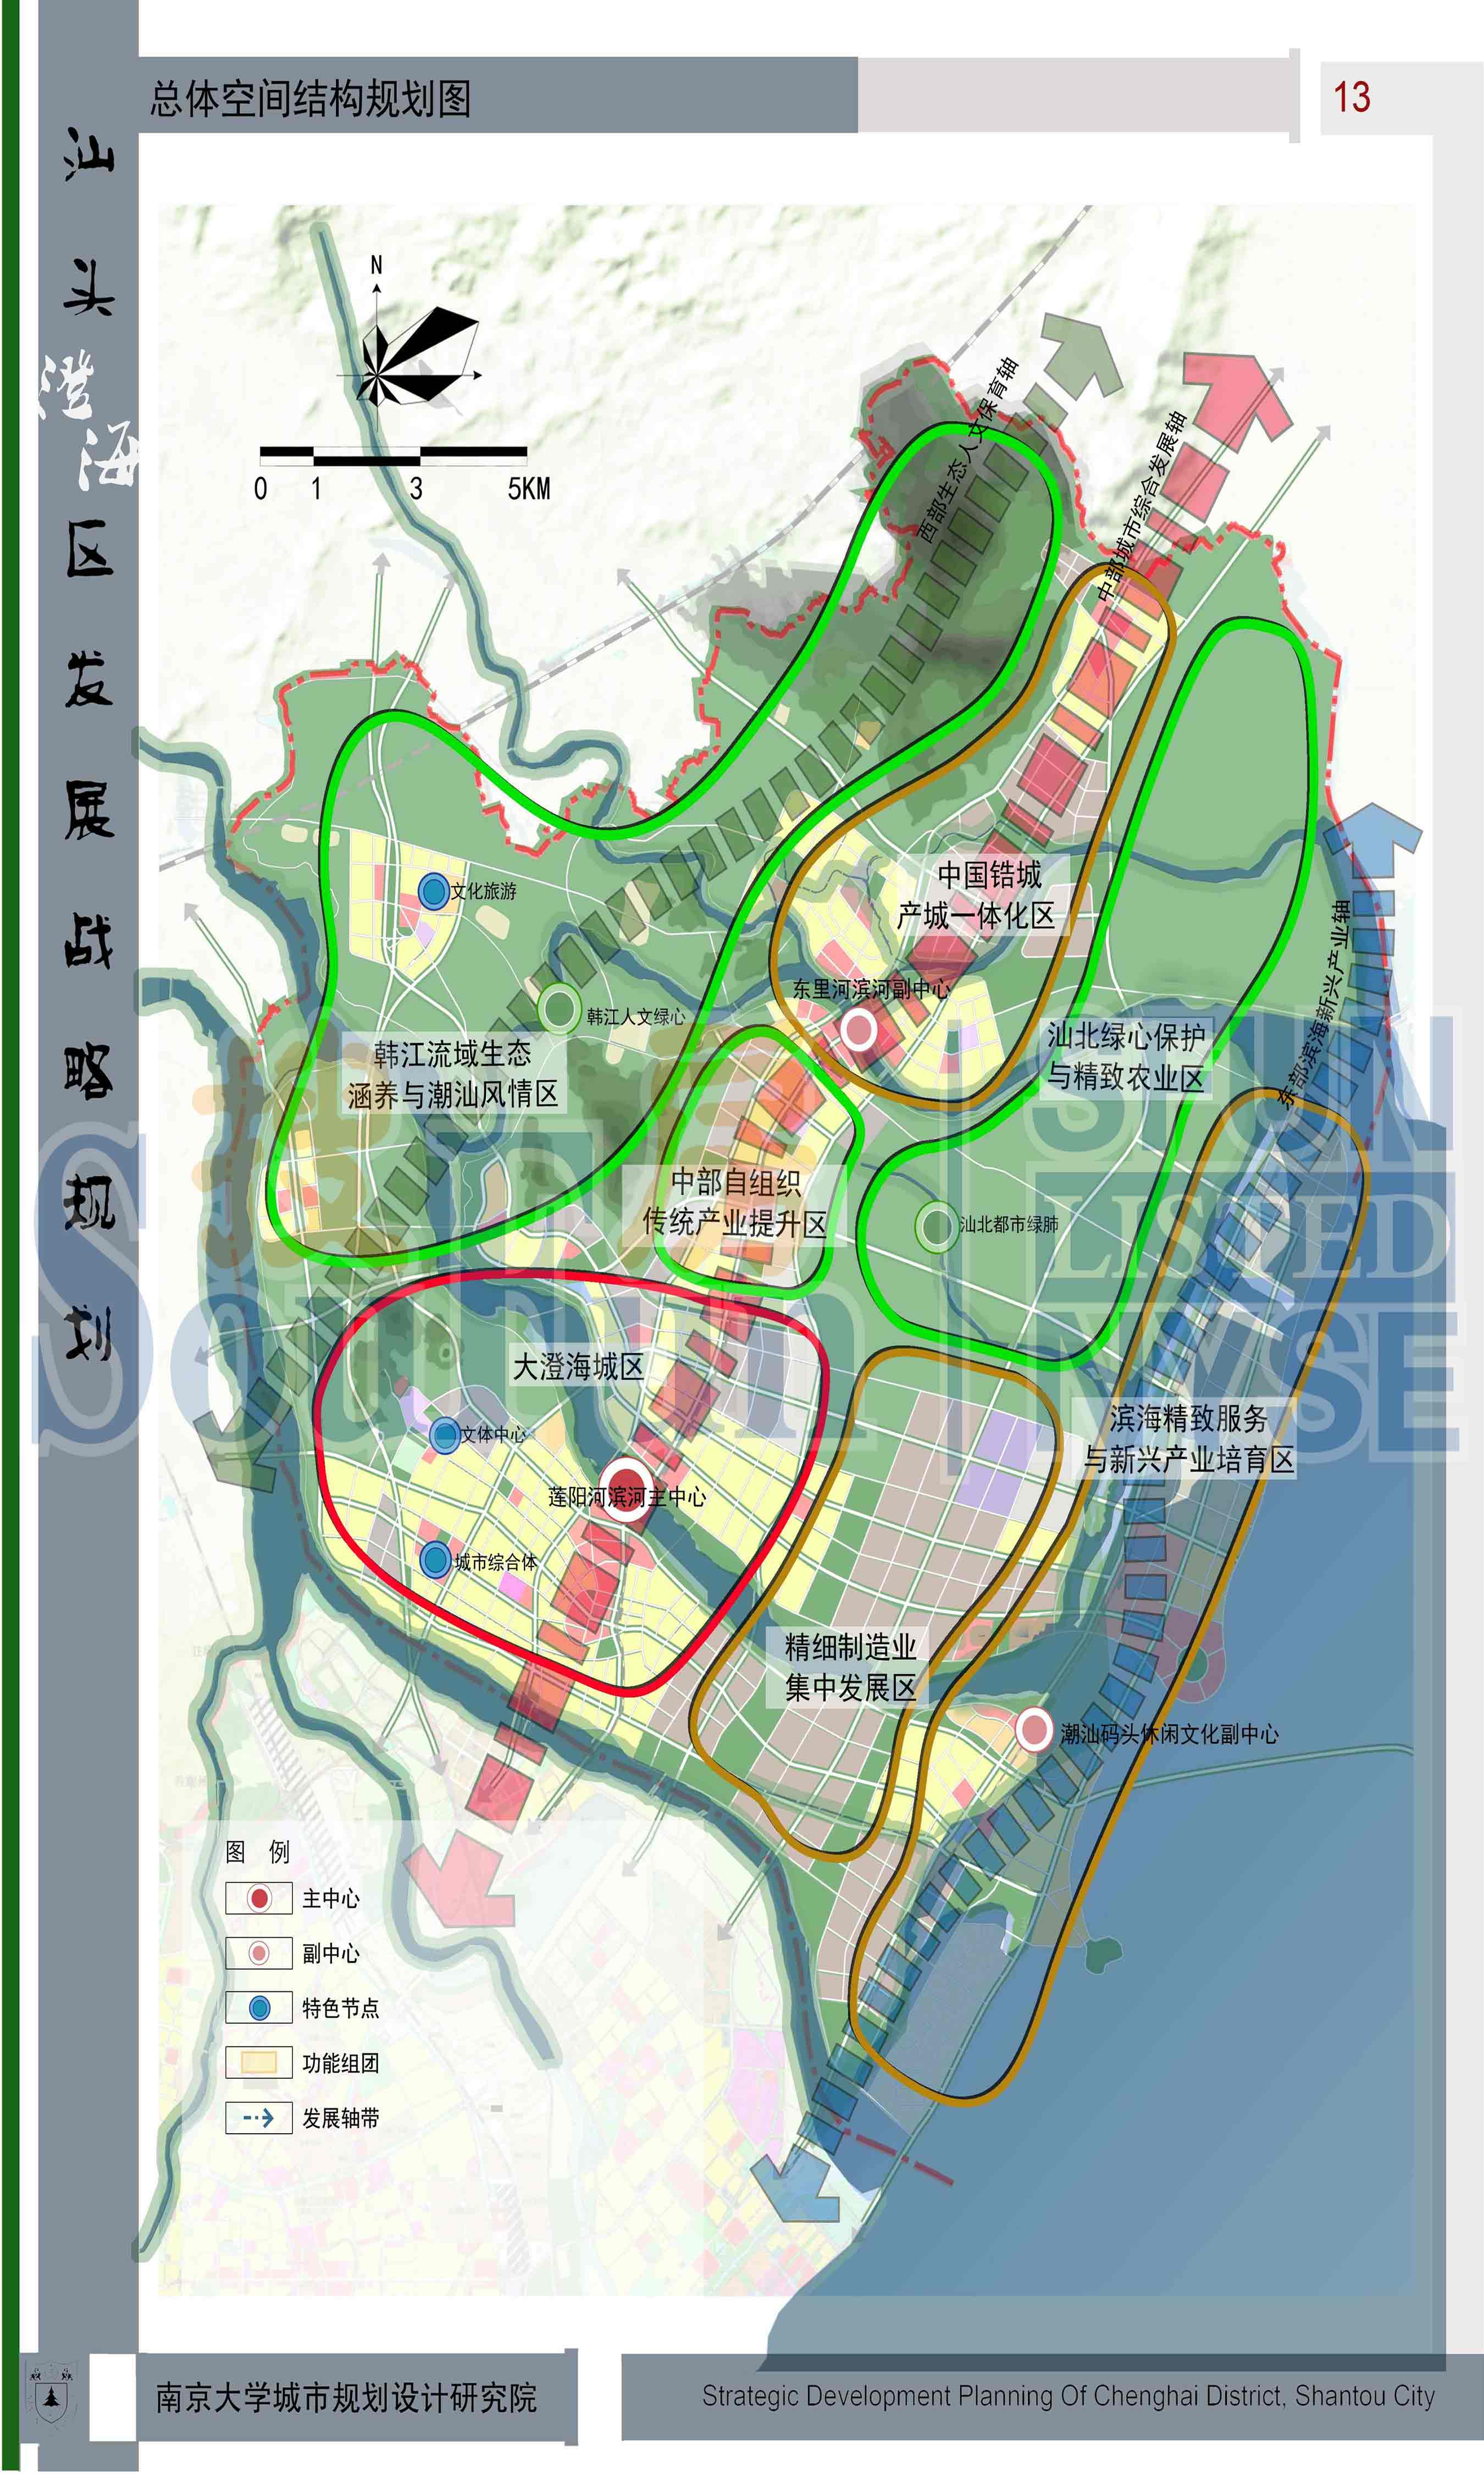 汕头市澄海区战略发展镇规划20102030初步方案公示意见征集